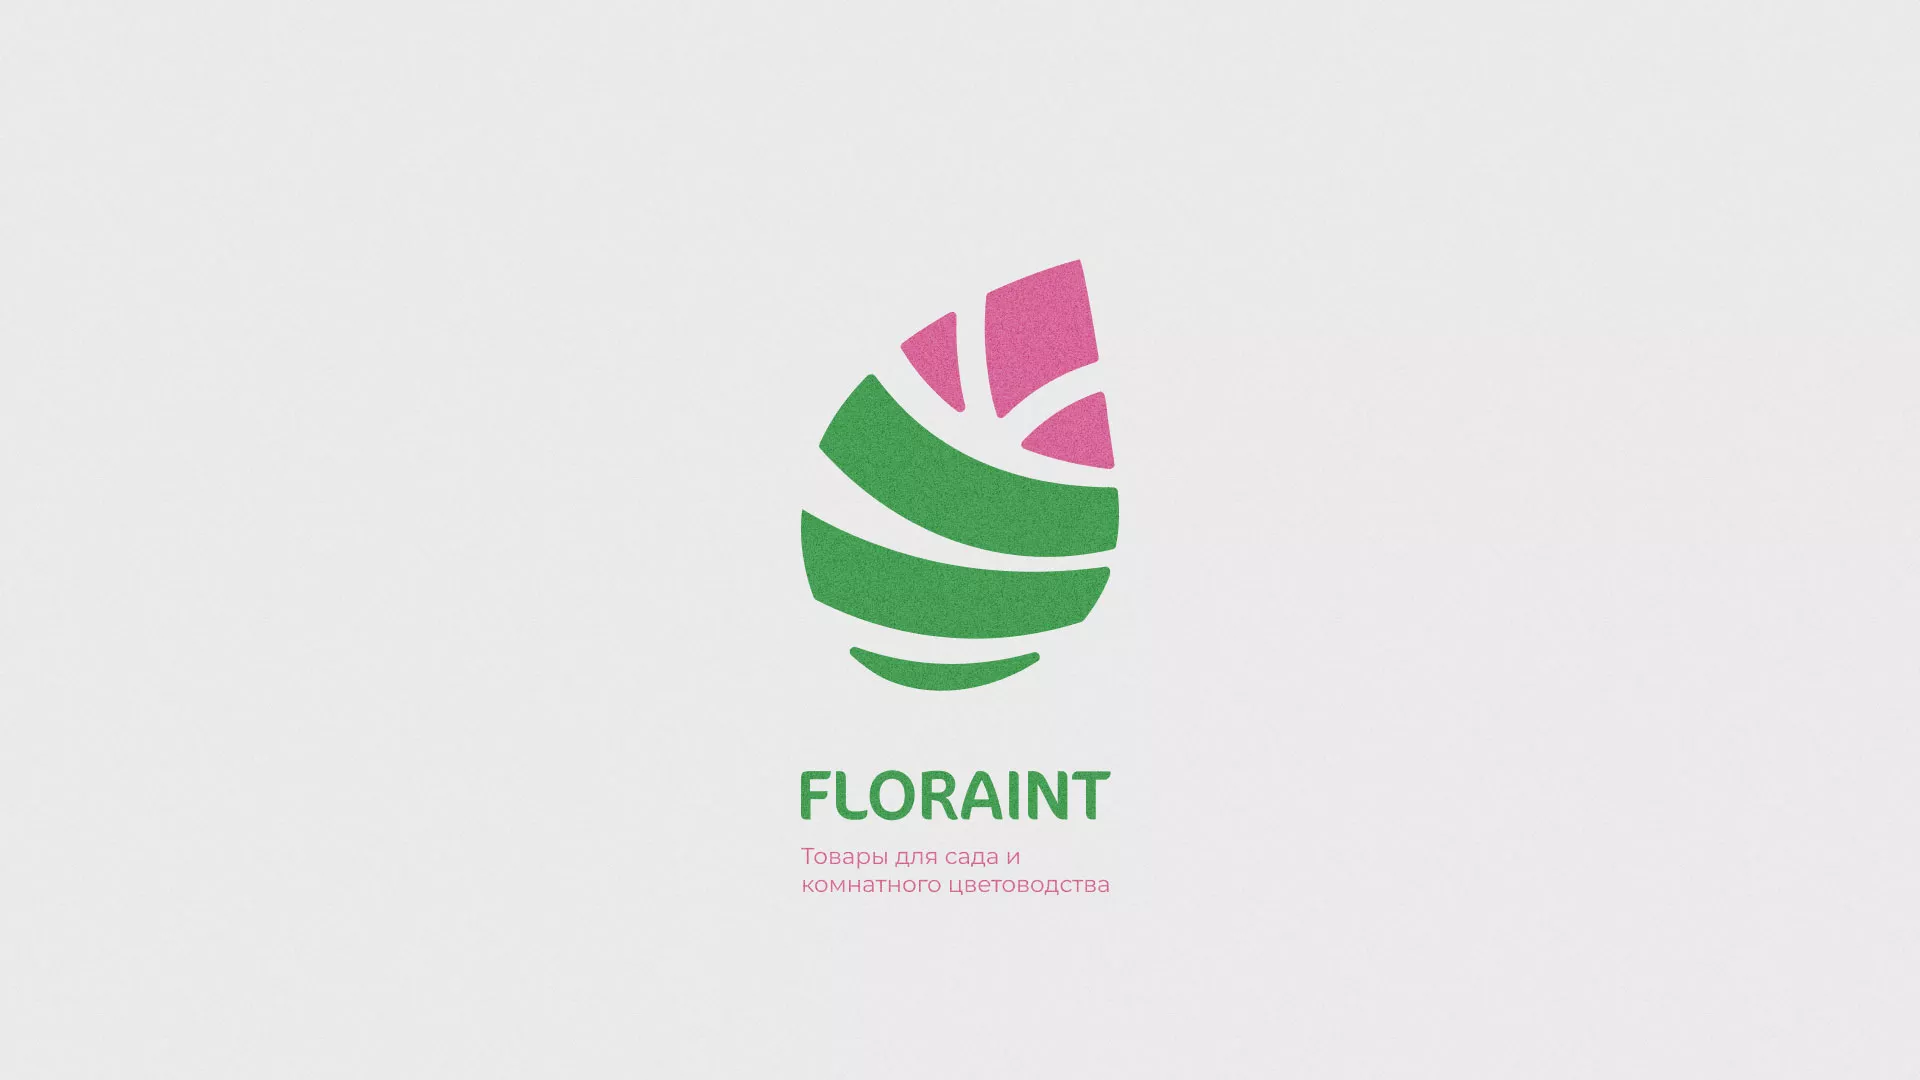 Разработка оформления профиля Instagram для магазина «Floraint» в Ликино-Дулево